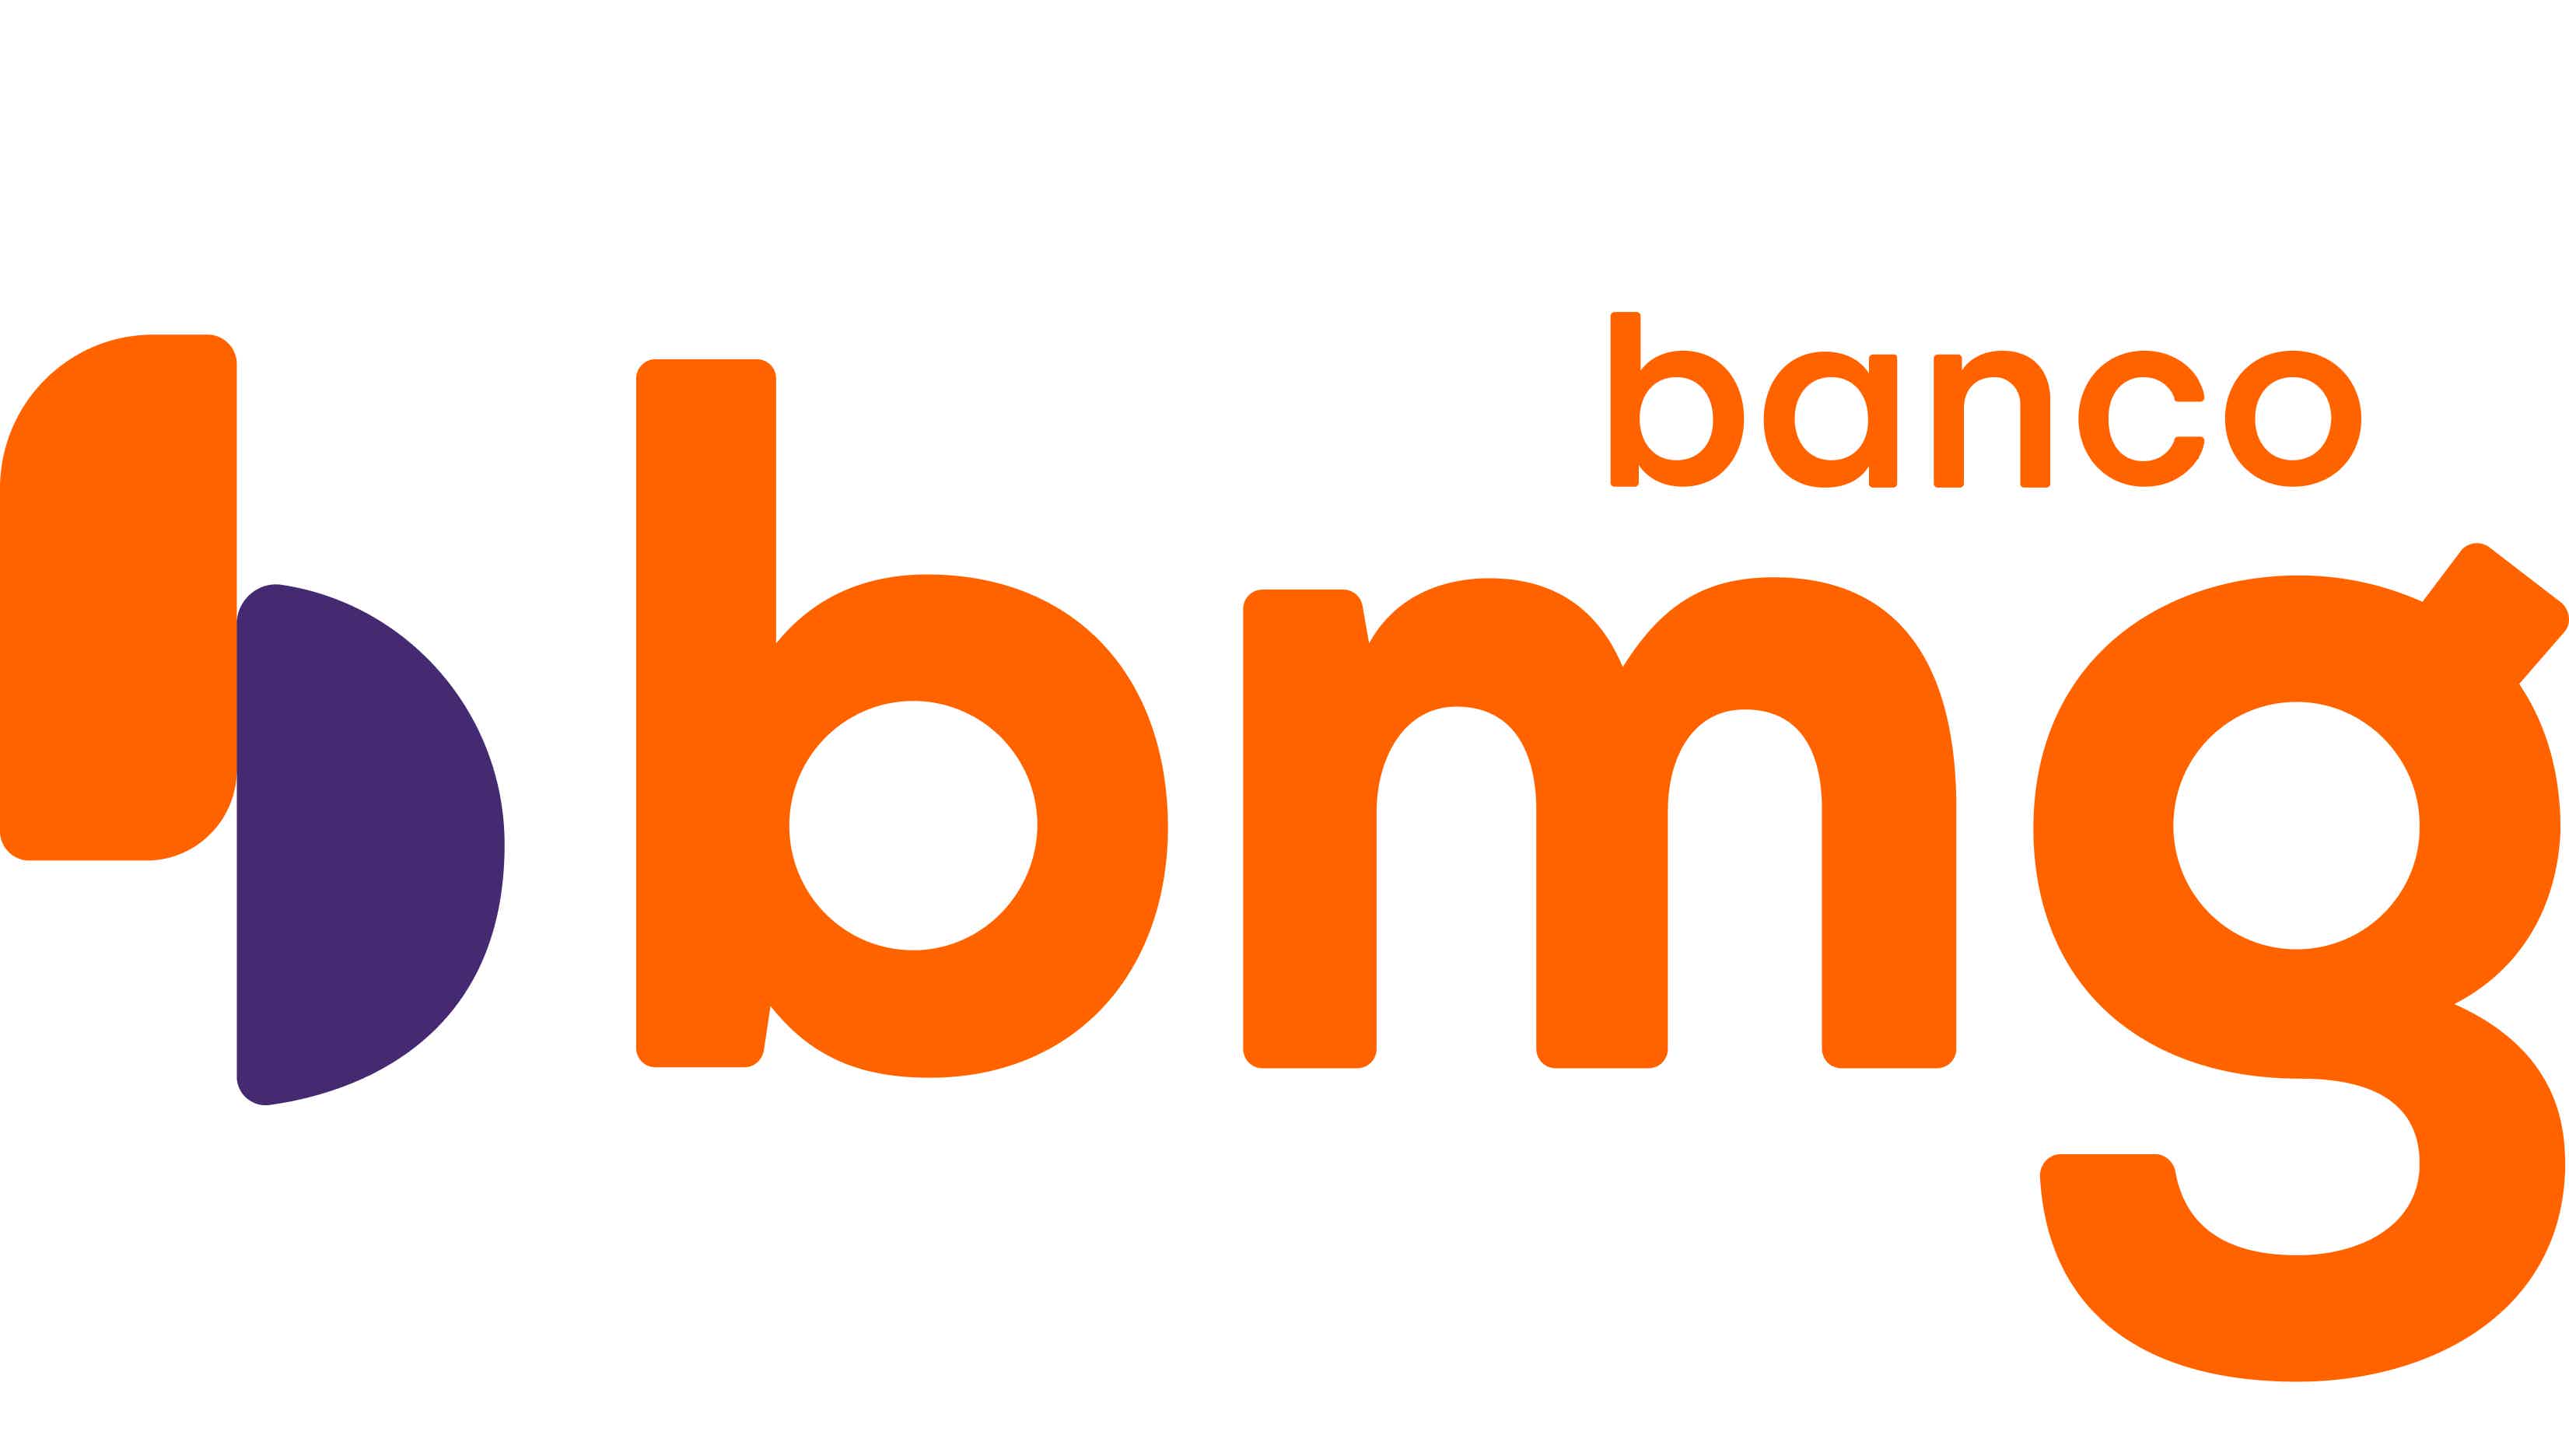 O Banco BMG oferece vários cartões para torcedores, como o BMG Vozão. Fonte: BMG.